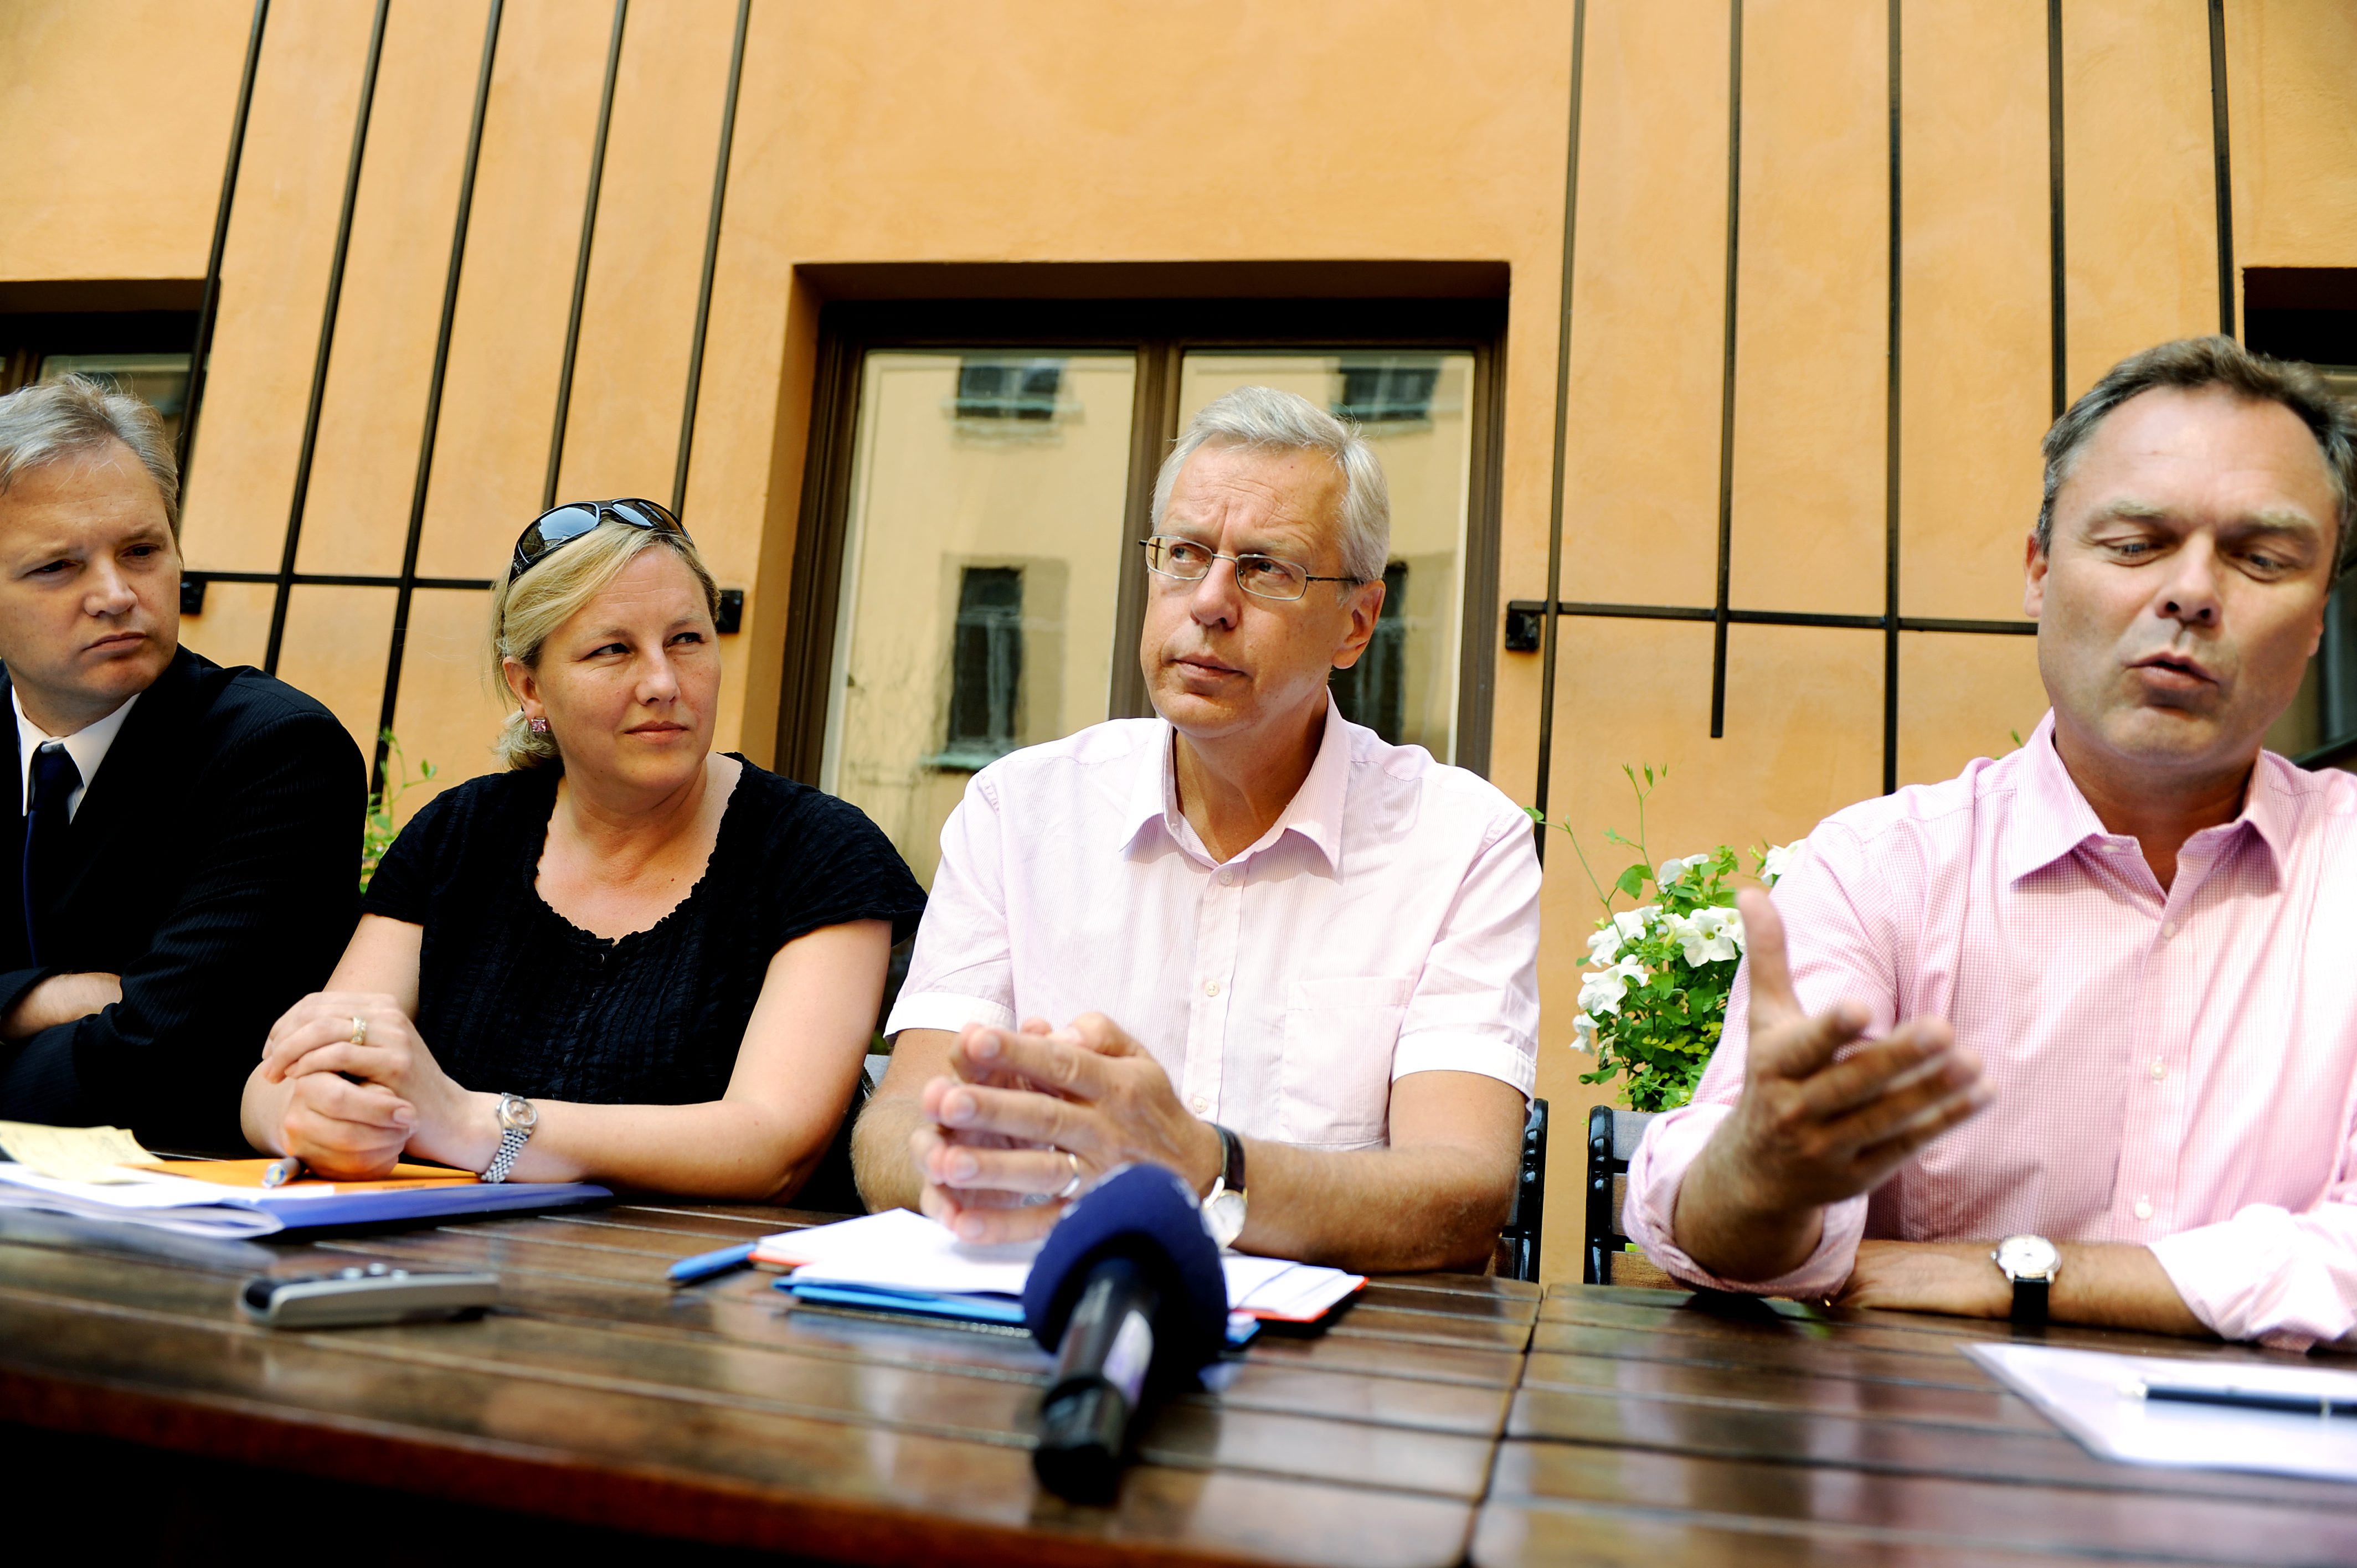 Riksdagsvalet 2010, Sten Tolgfors, Liberalerna, Moderaterna, Jan Björklund